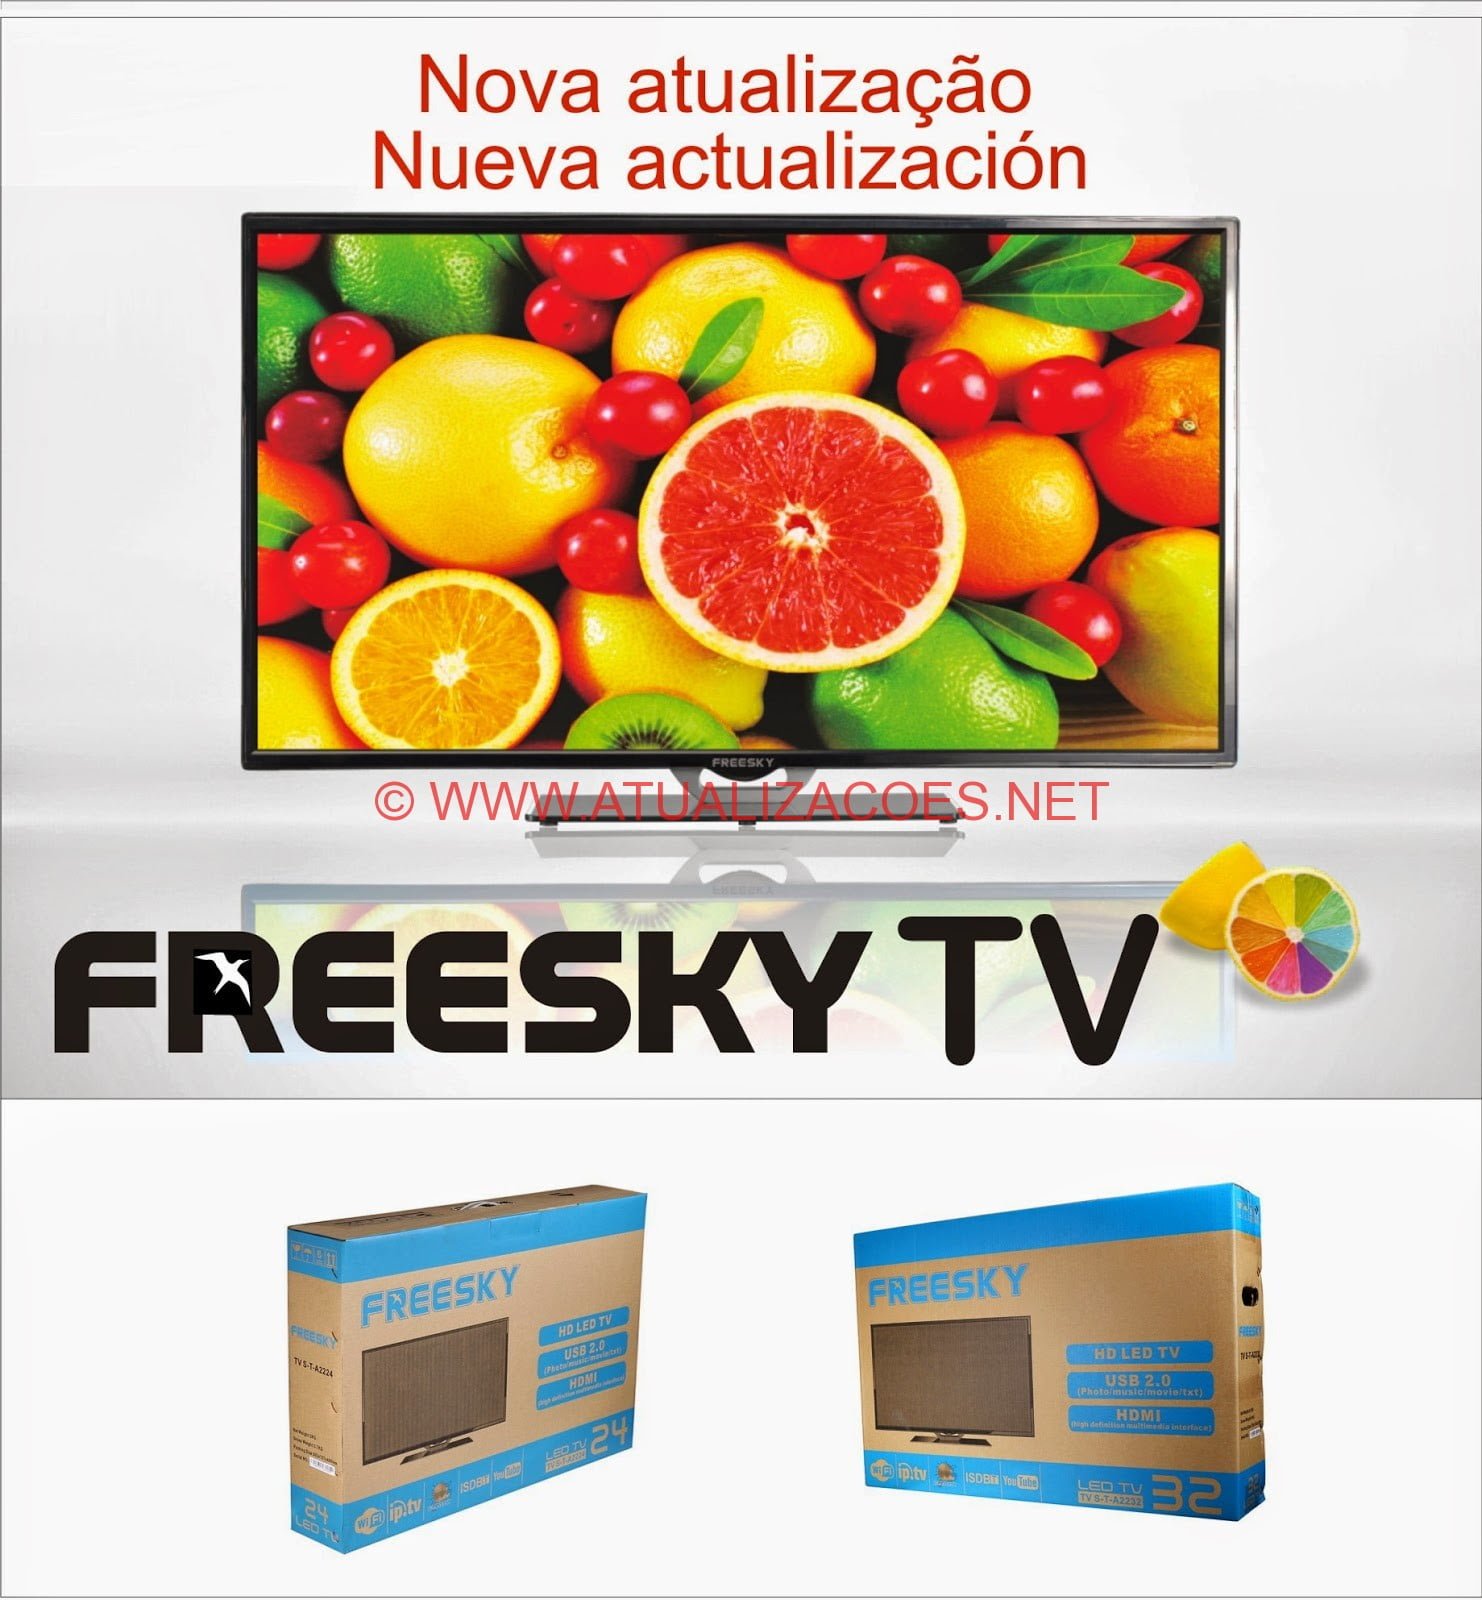 Atualização-Freesky-TV Freesky TV Nova Atualização V2.22 02-02-2016